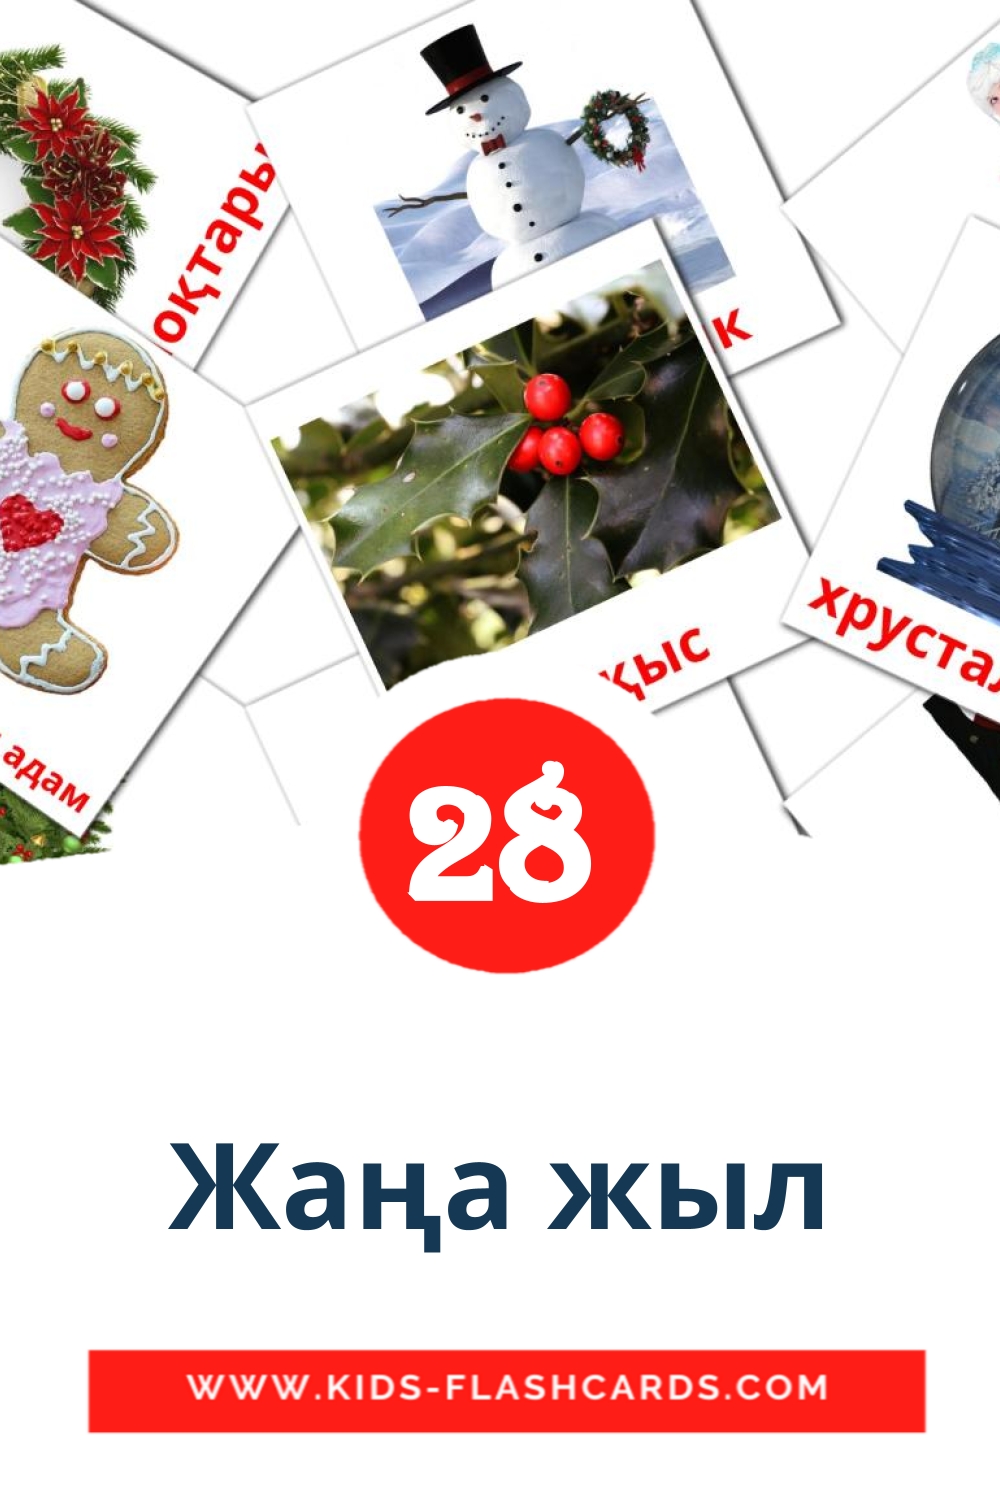 28 tarjetas didacticas de Жаңа жыл para el jardín de infancia en kazajo